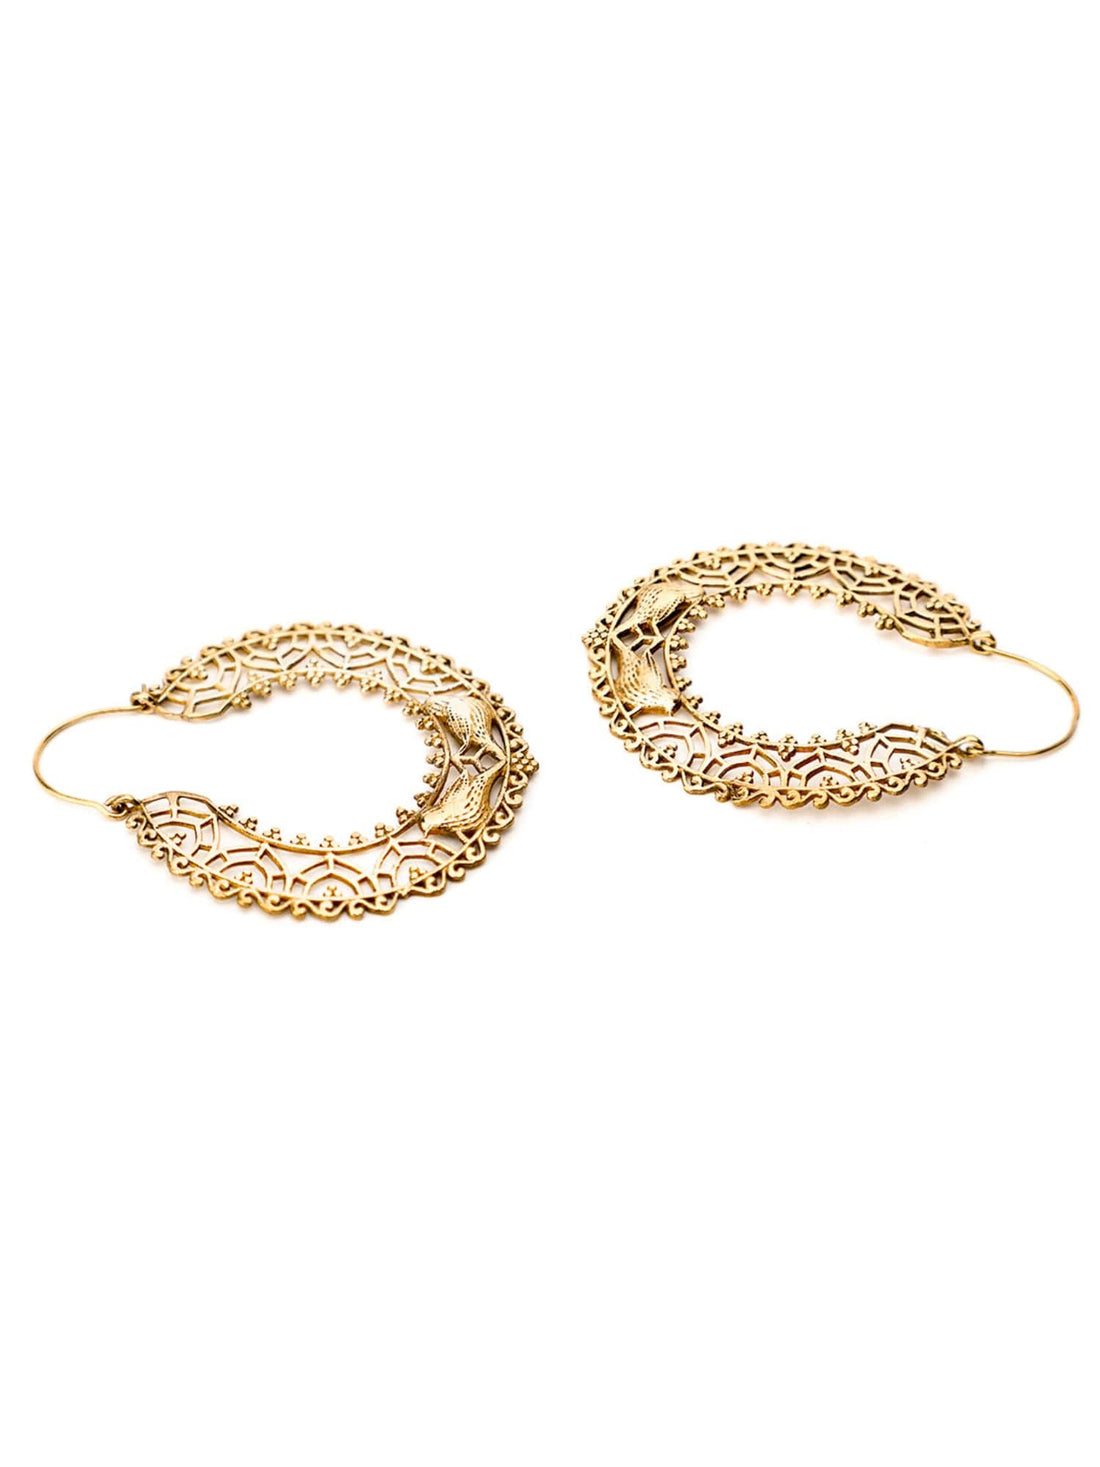 Festive Wear Hoops Earrings - Western Gold-Plated Brass Earrings By Studio One Love